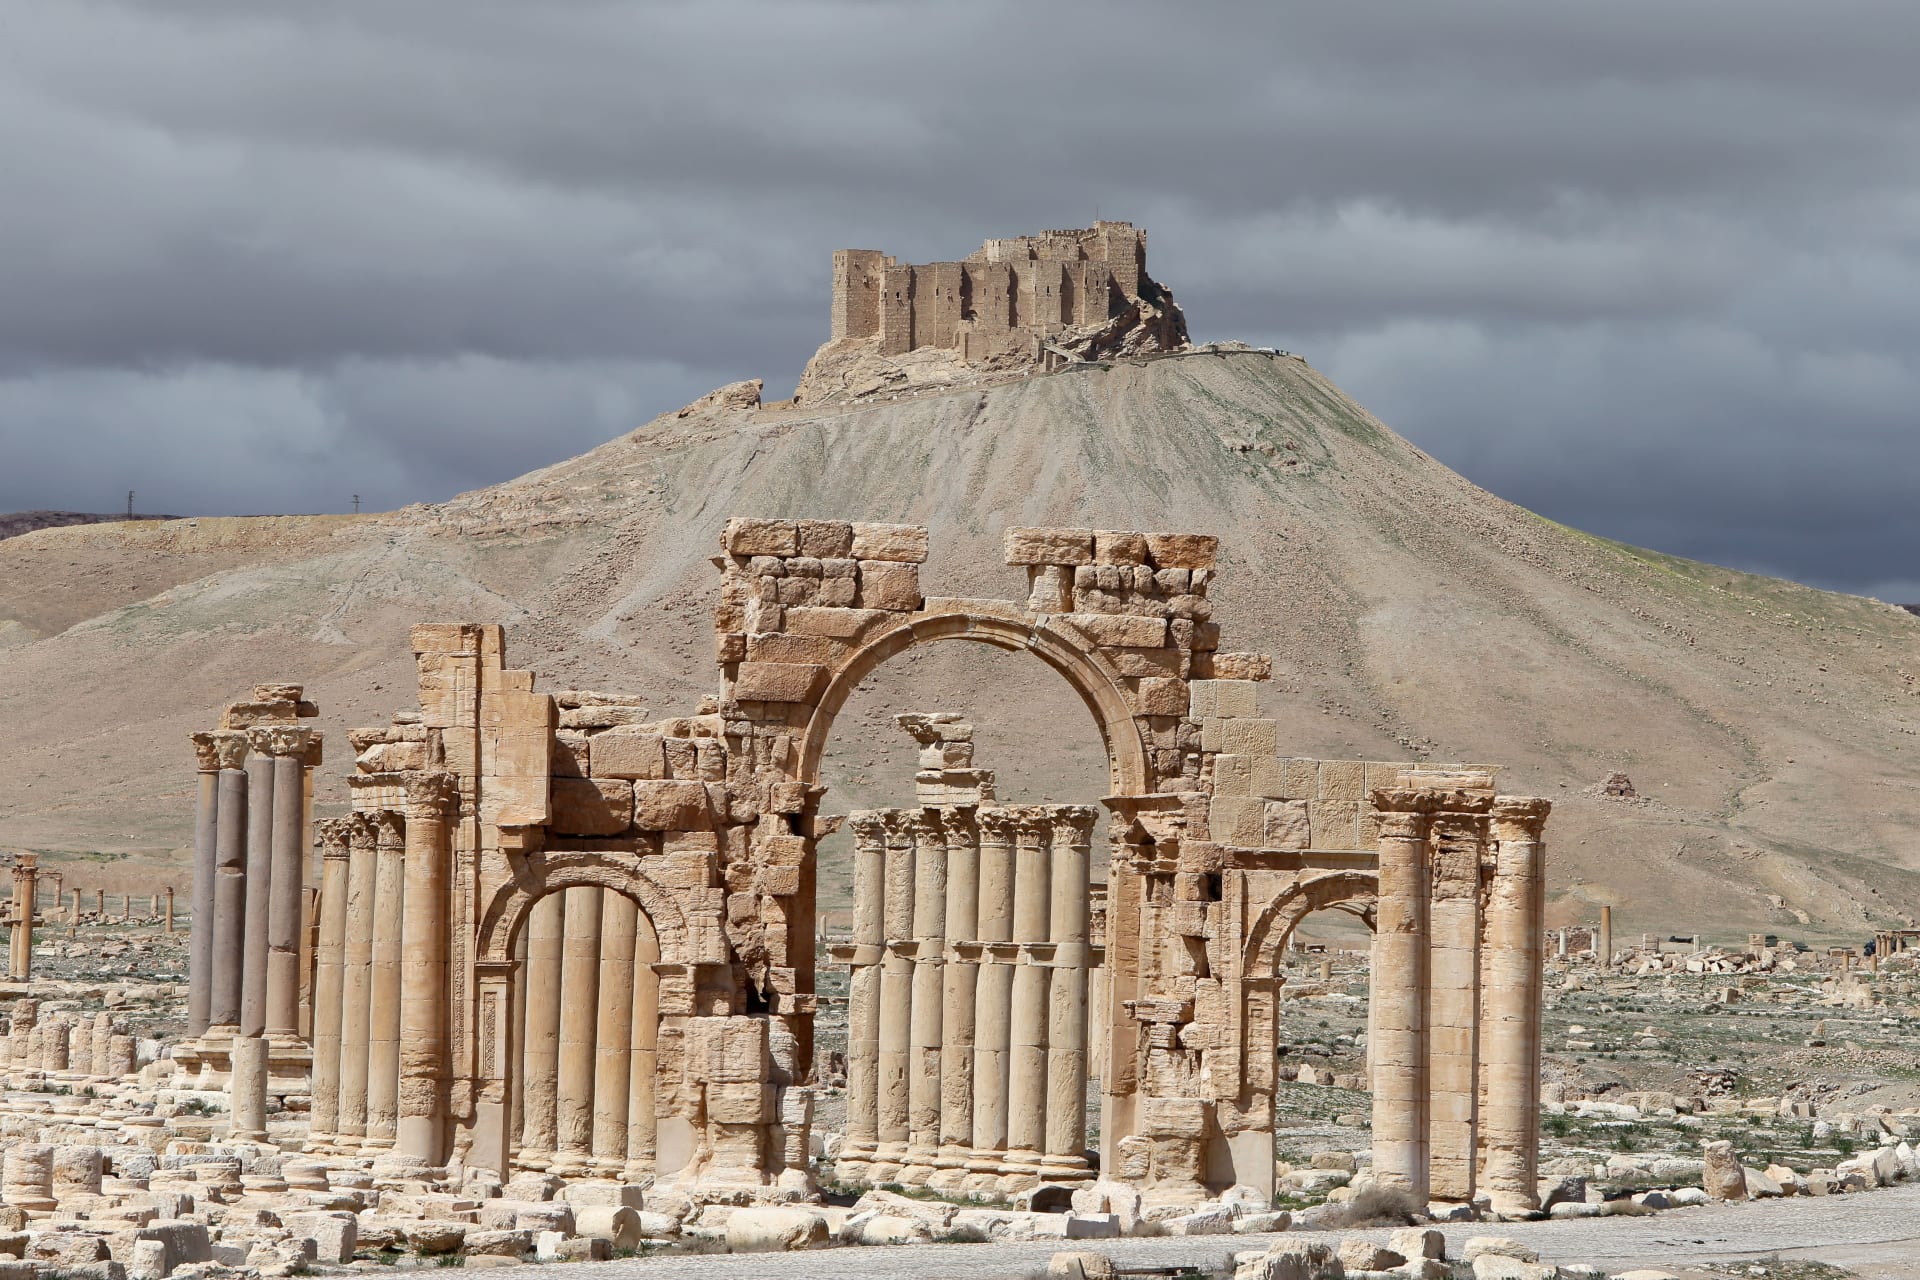 تنظيم "داعش" يعدم عالم آثار سورياً في تدمر